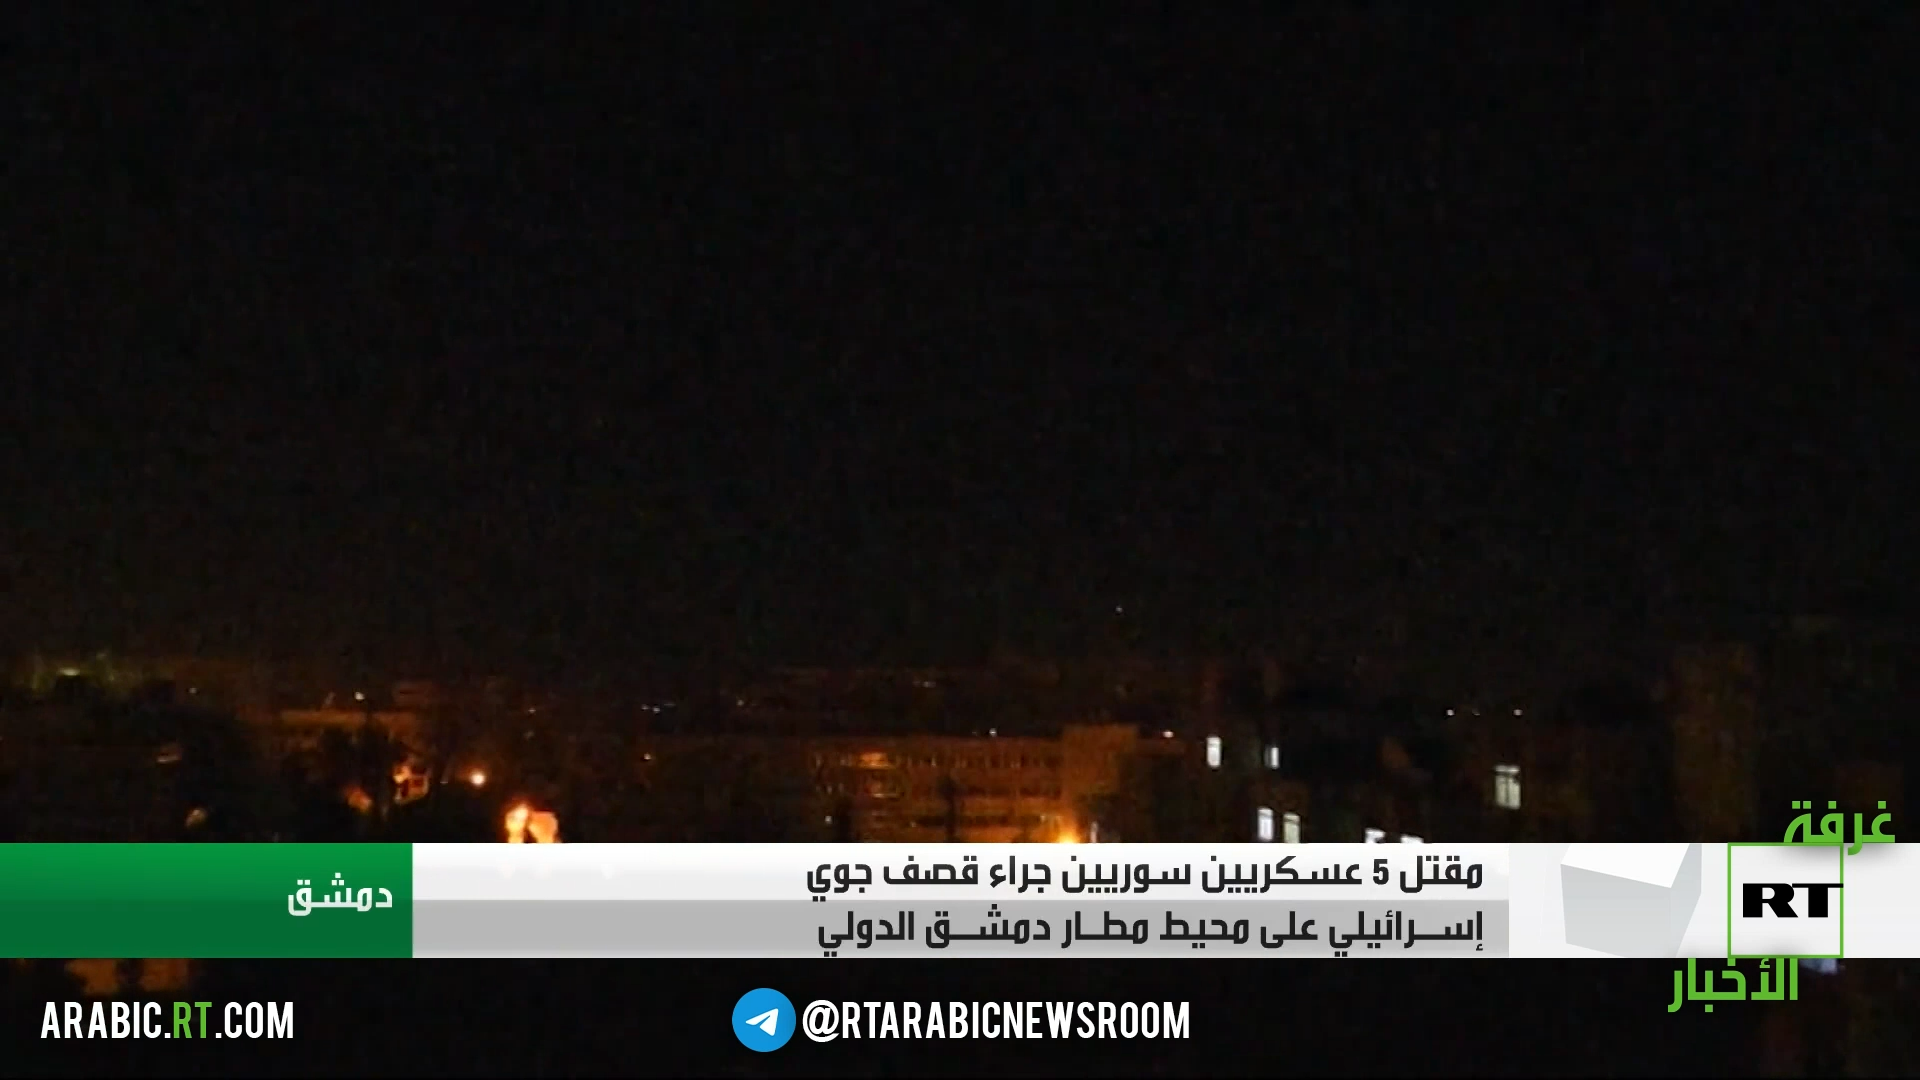 حميميم: الجيش السوري يسقط معظم الصواريخ الإسرائيلية في هجوم الأمس باستخدام منظومات دفاع جوي روسية